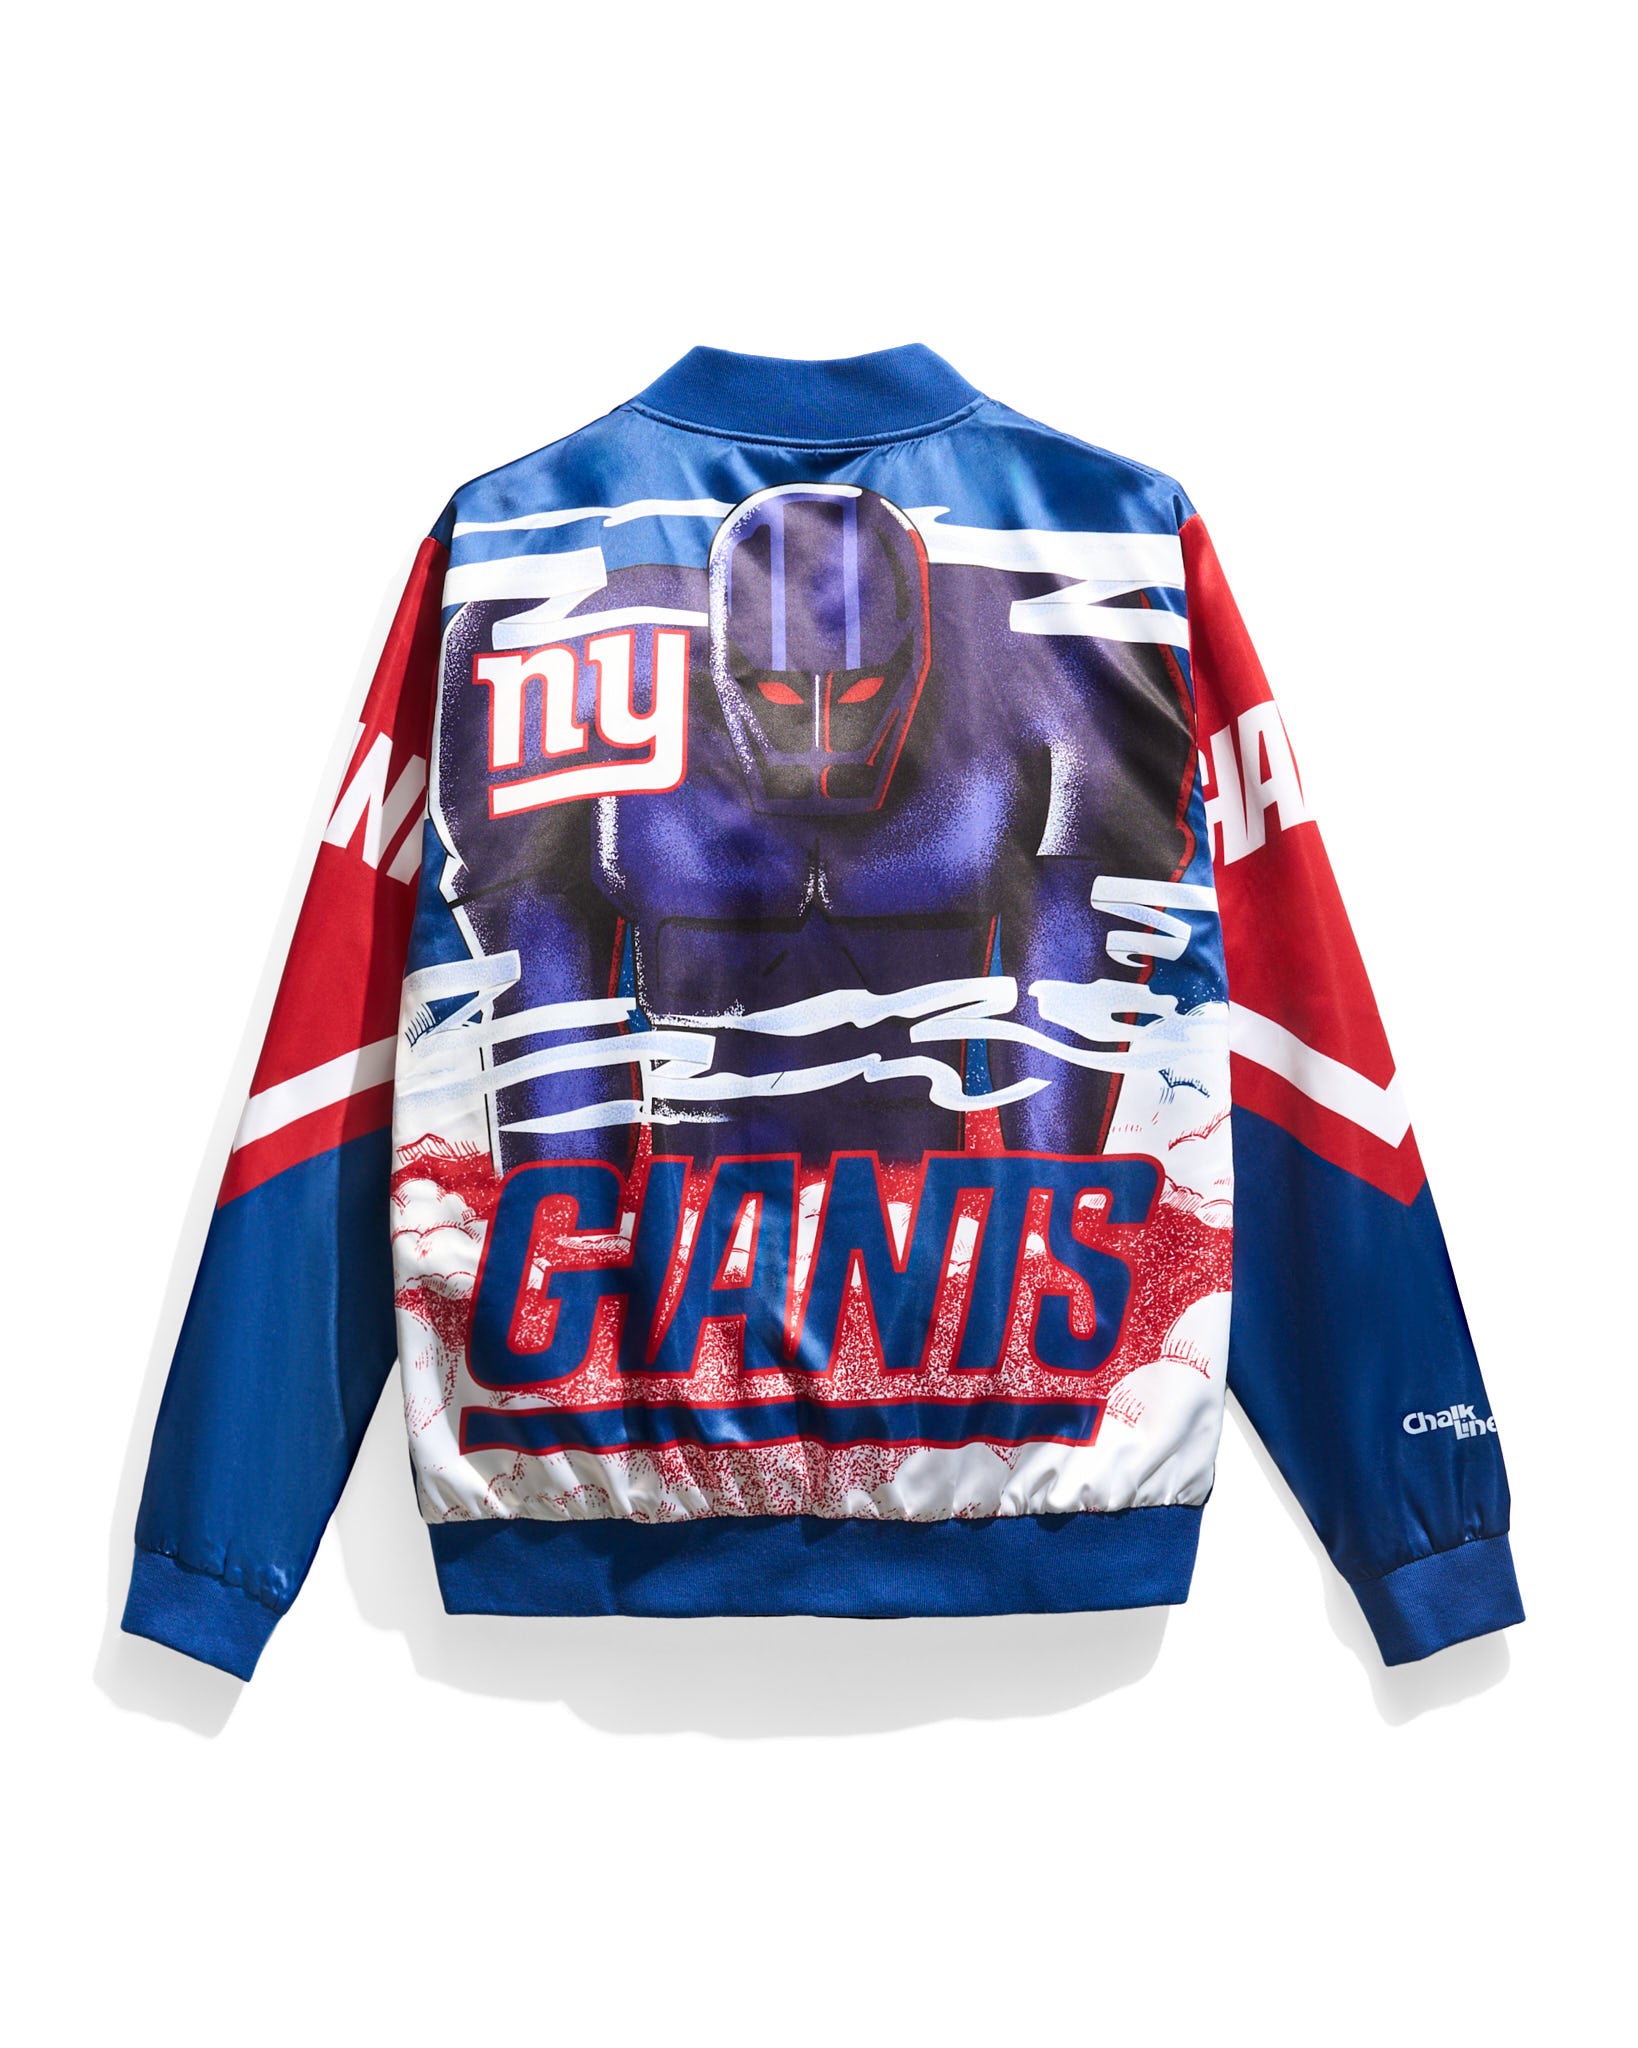 retro new york giants sweater